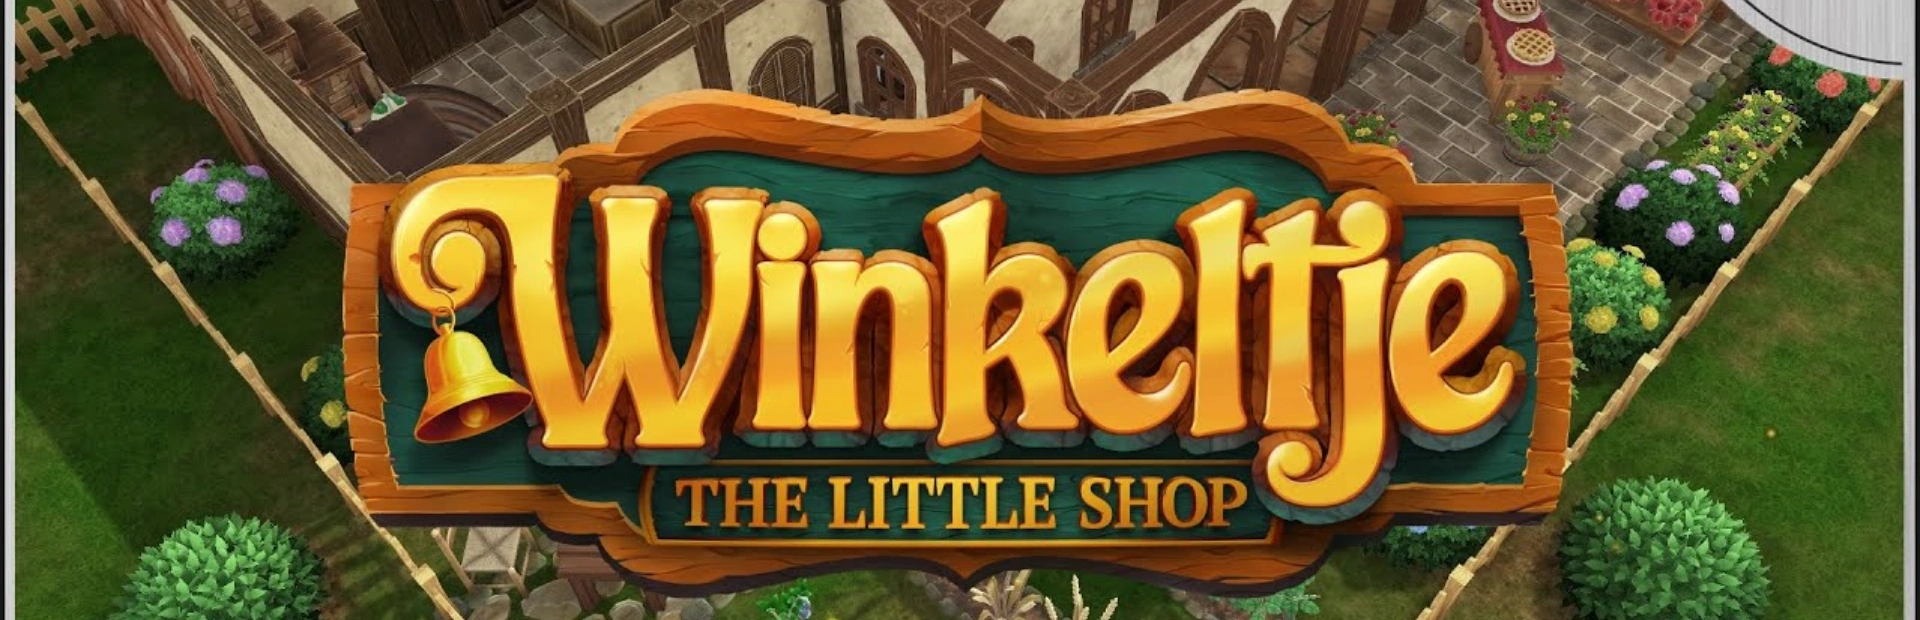 Winkeltje The.Little.Shop .banner3